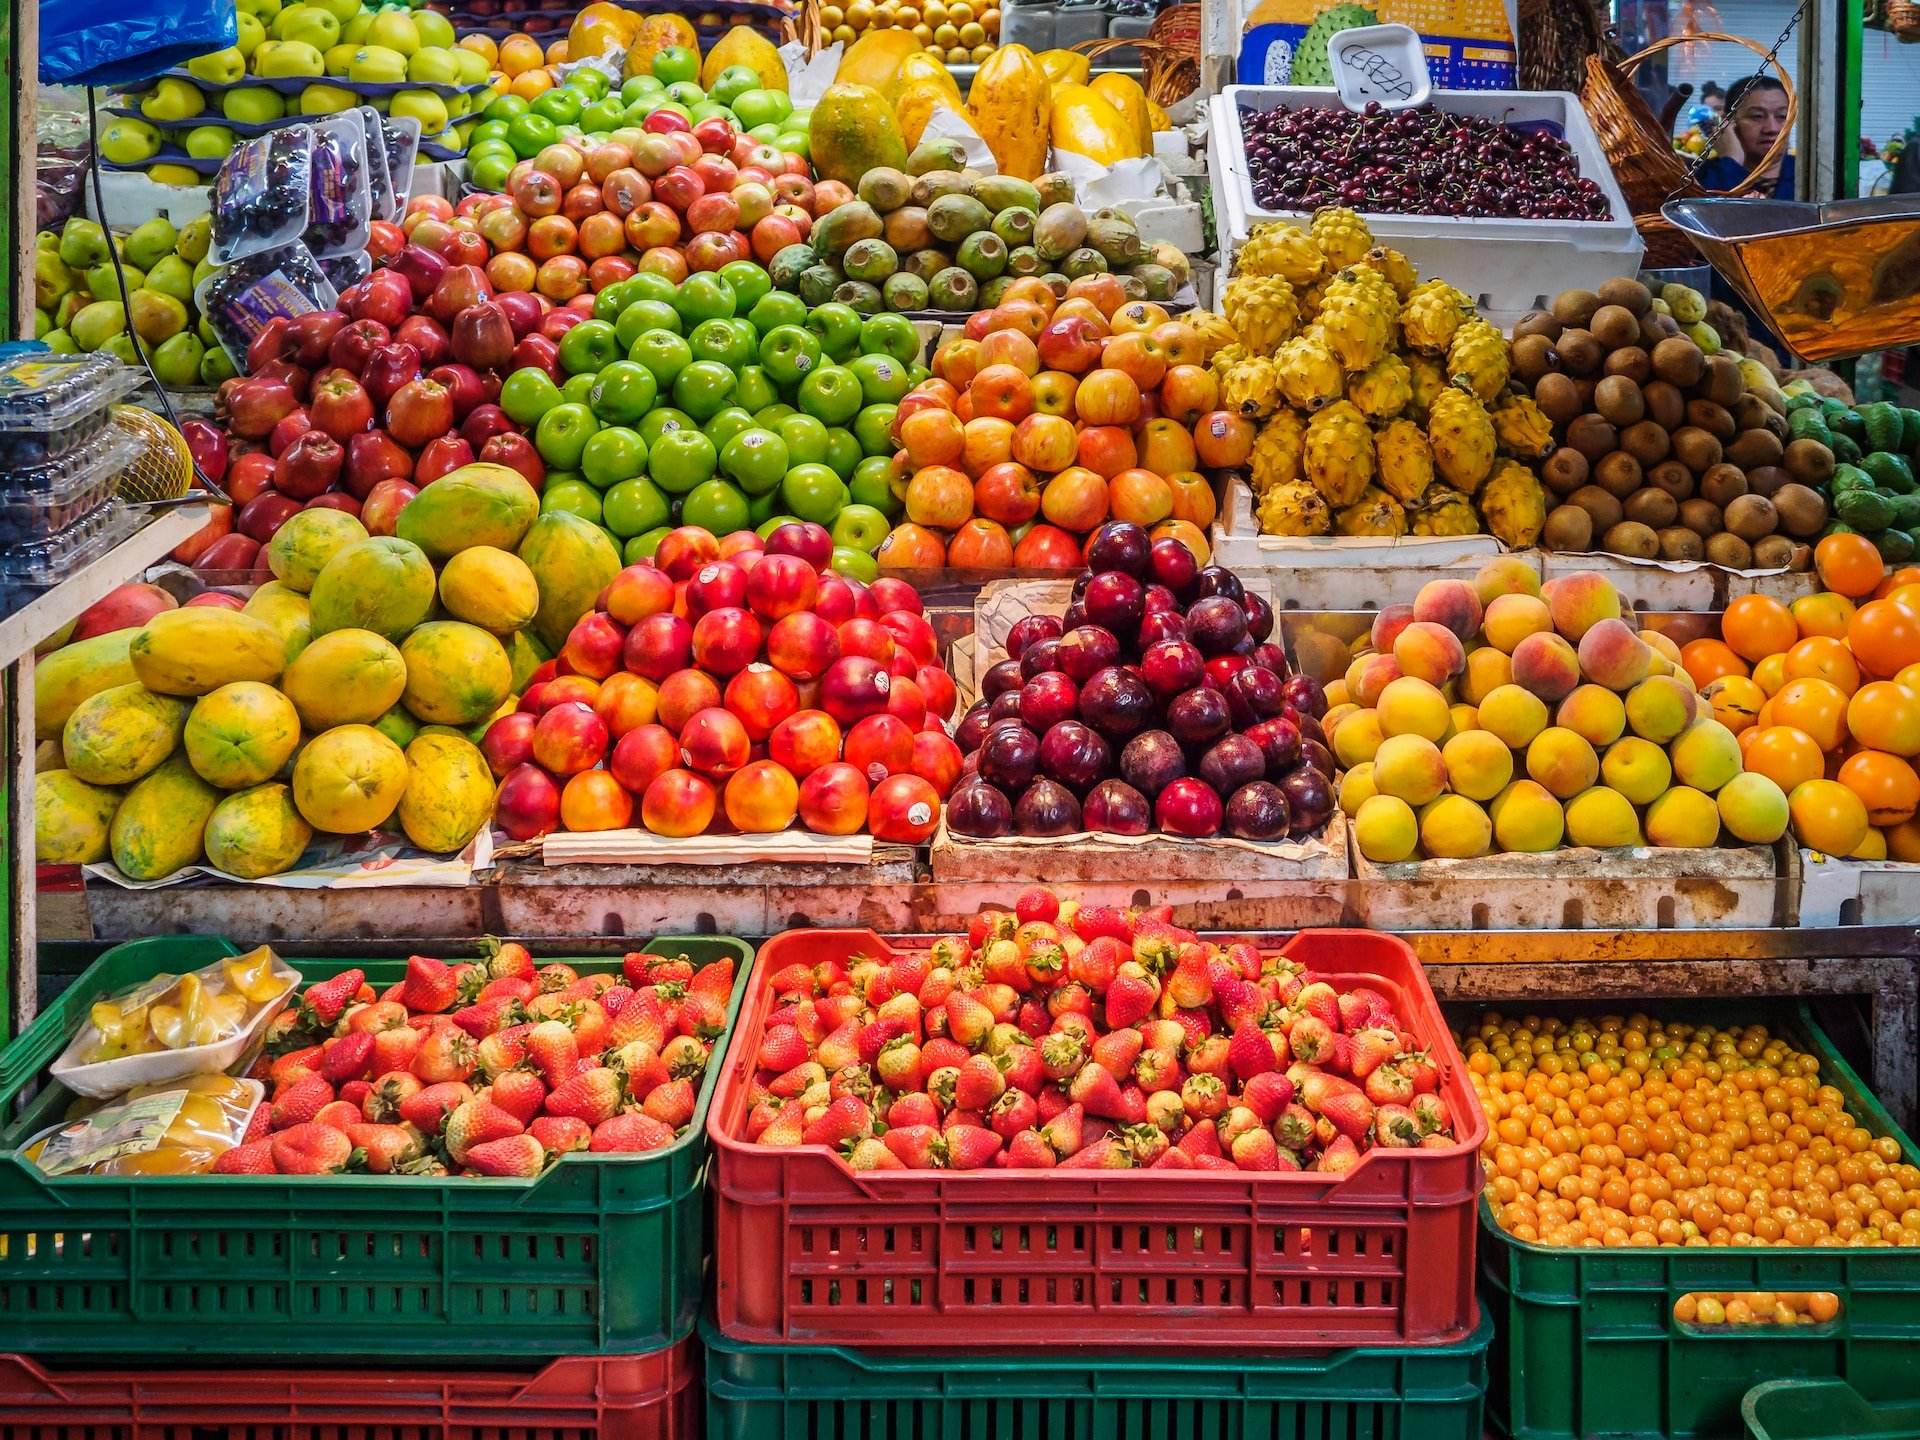 És necessari menjar 5 peces de fruita al dia? T'expliquem els perquès